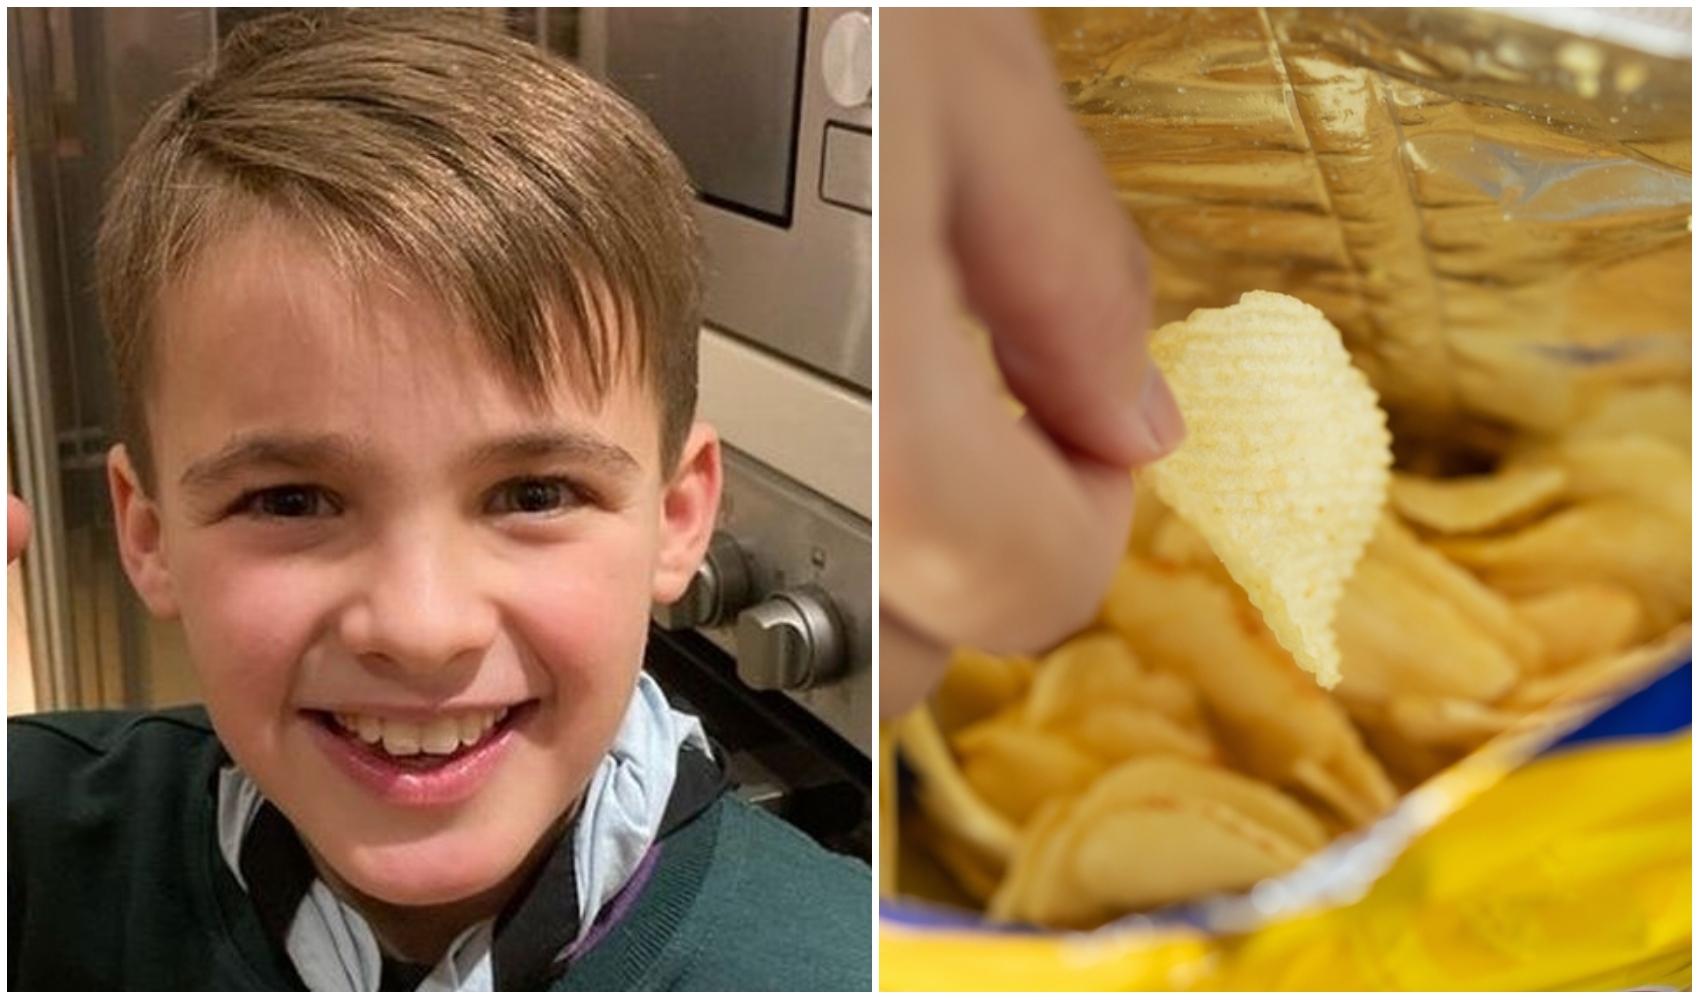 Ce a descoperit un băiat de 9 ani într-o pungă de chipsuri. Imaginile cu descoperirea au devenit virale. Peste ce a dat